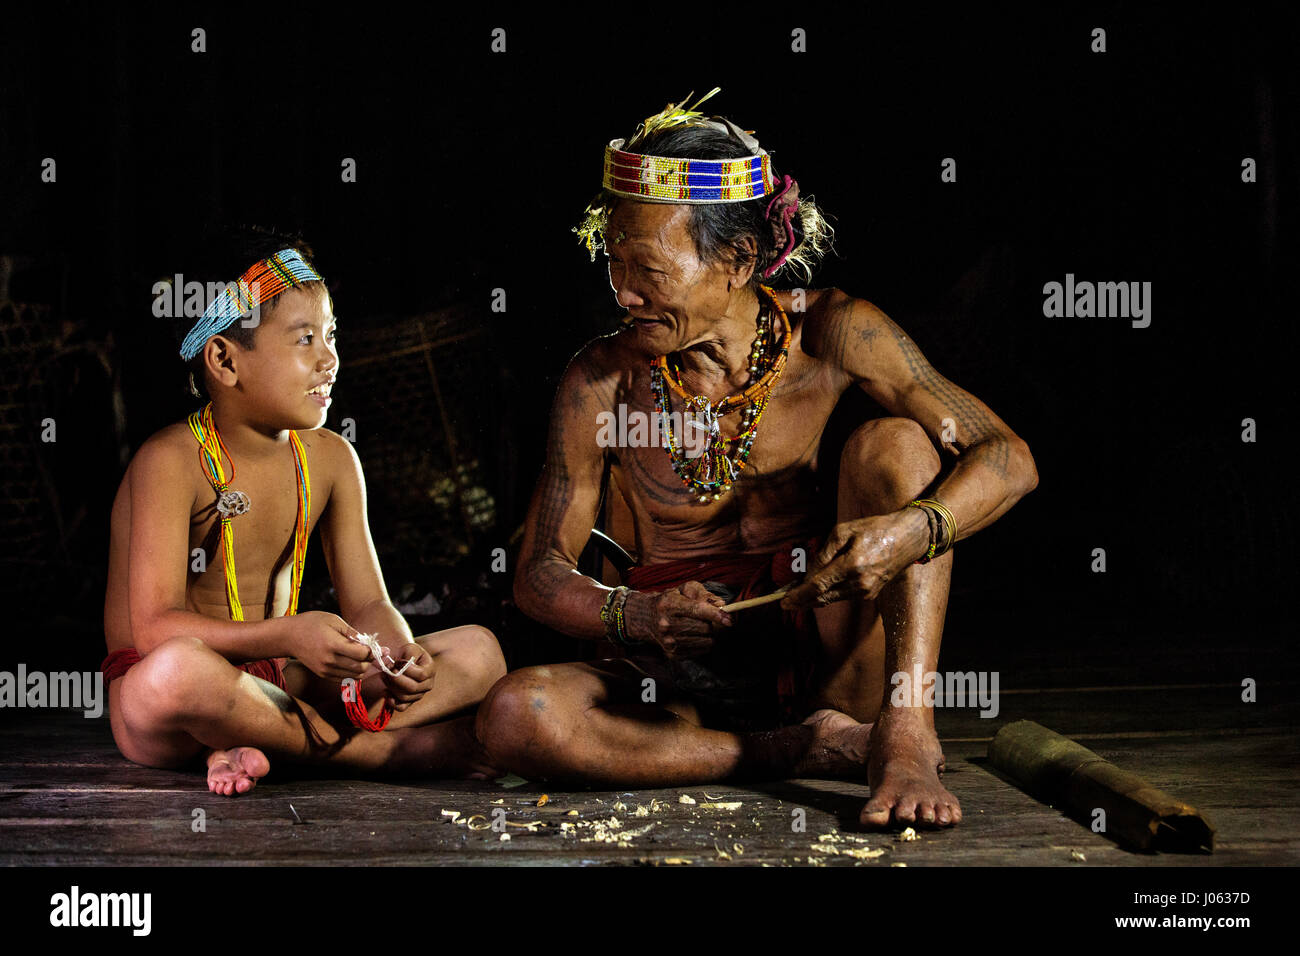 L'île de Siberut, l'Indonésie : de magnifiques photos de la dernière partie d'une tribu tatoué donner un aperçu de leur vie quotidienne sur l'île isolée, leur foyer. La tribu Mentawai vivre un mode de vie traditionnel et à l'écart de la technologie du xxie siècle. Les photographies montrent la tribu chasse en grande jungle tropicale et capturé les moments personnels en tant que père a rendu les traditions tribales de son fils. Ces personnes sont les derniers à utiliser leur technique de part-tapping de tatouer leur corps. Ils habitent l'île de Siberut en Indonésie et qui sont intimement photographié par Henry K Banque D'Images